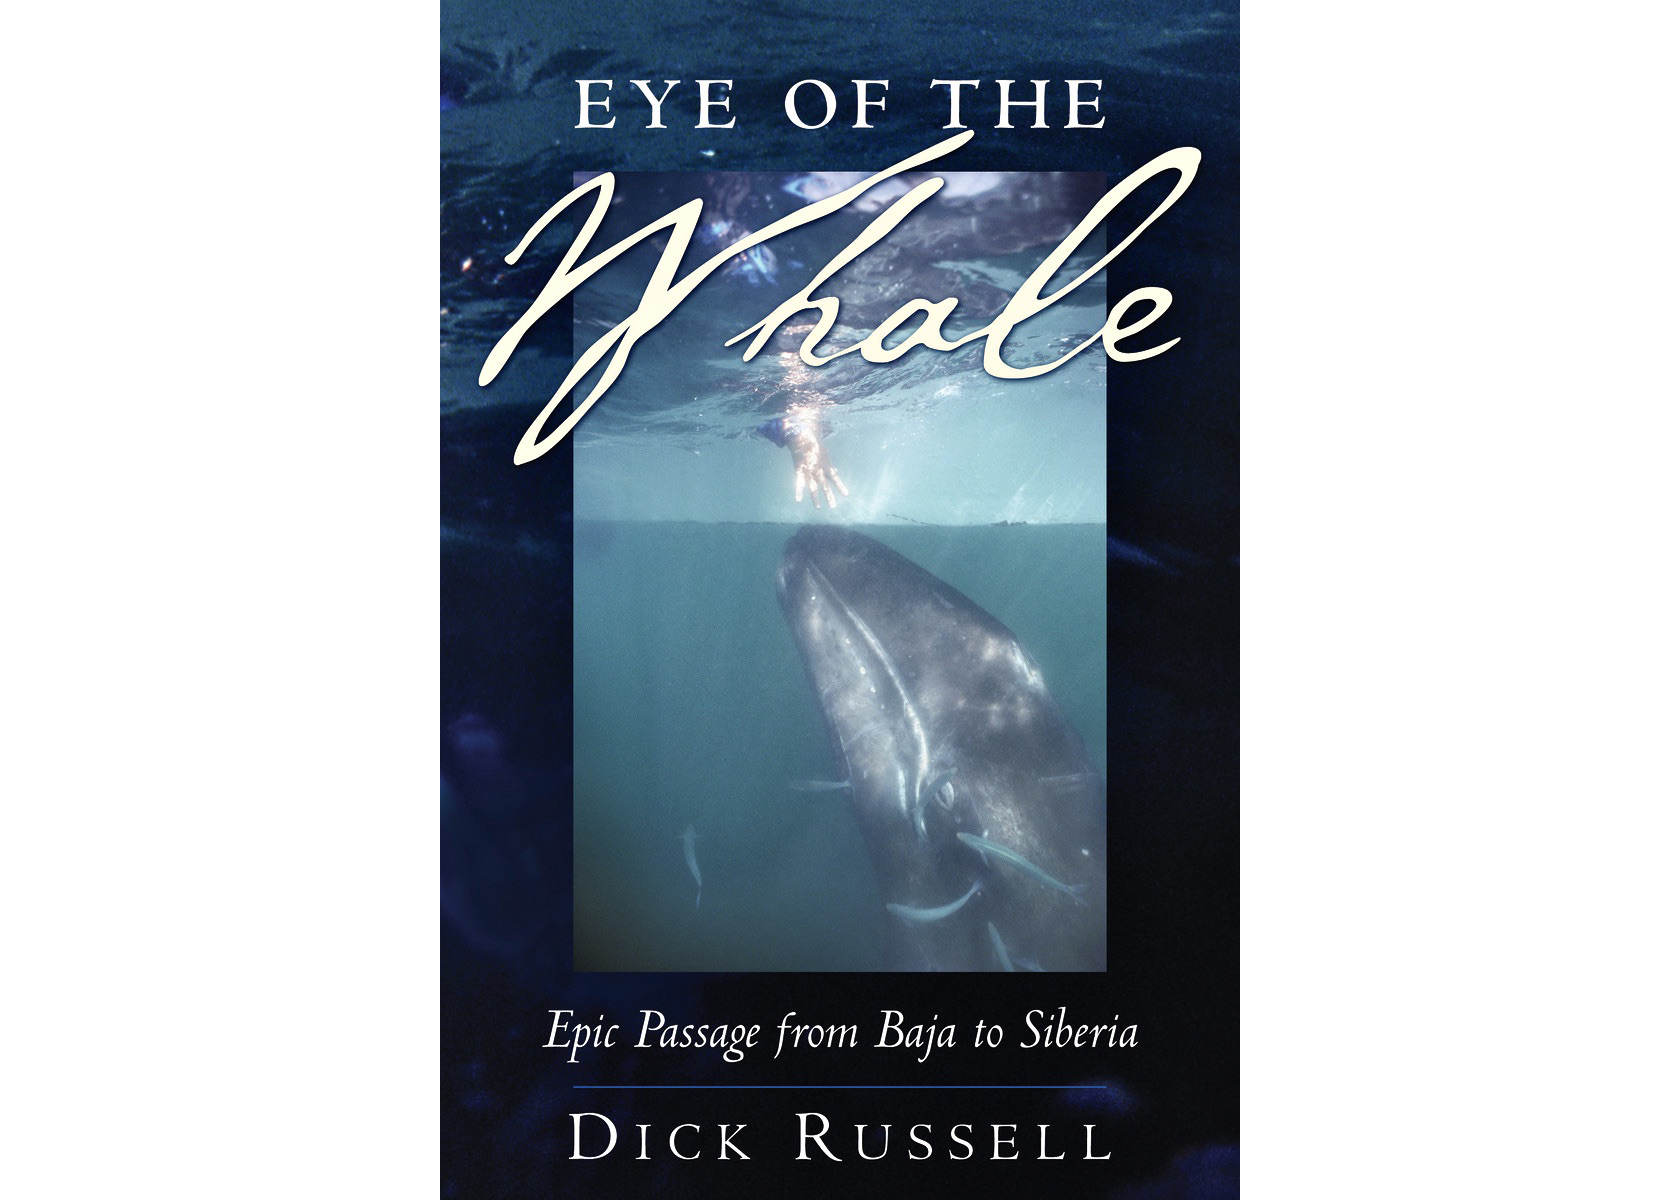 ePostcard #167: A Naturalist’s Bookshelf (Eye of the Whale)